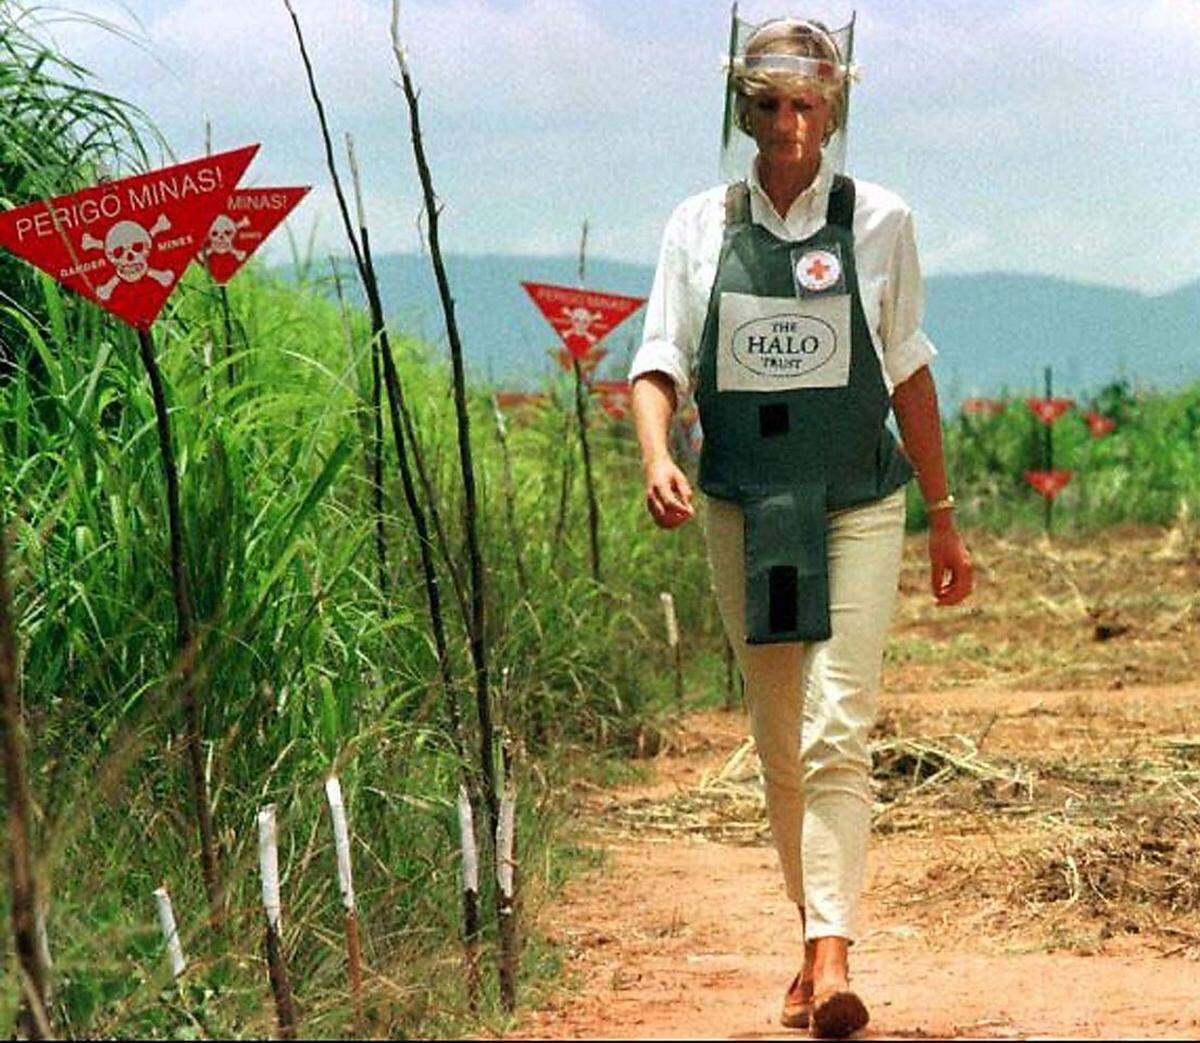 Lady Diana nimmt zudem auch kontroversiellere Engagements an, die ihr am Herzen liegen. Ihr Einsatz gegen Minen ist ein Beispiel dafür. Ihr Auftreten ist global; rund um den Globus setzt sie sich für Charity-Projekte ein, trifft Politiker und Persönlichkeiten.